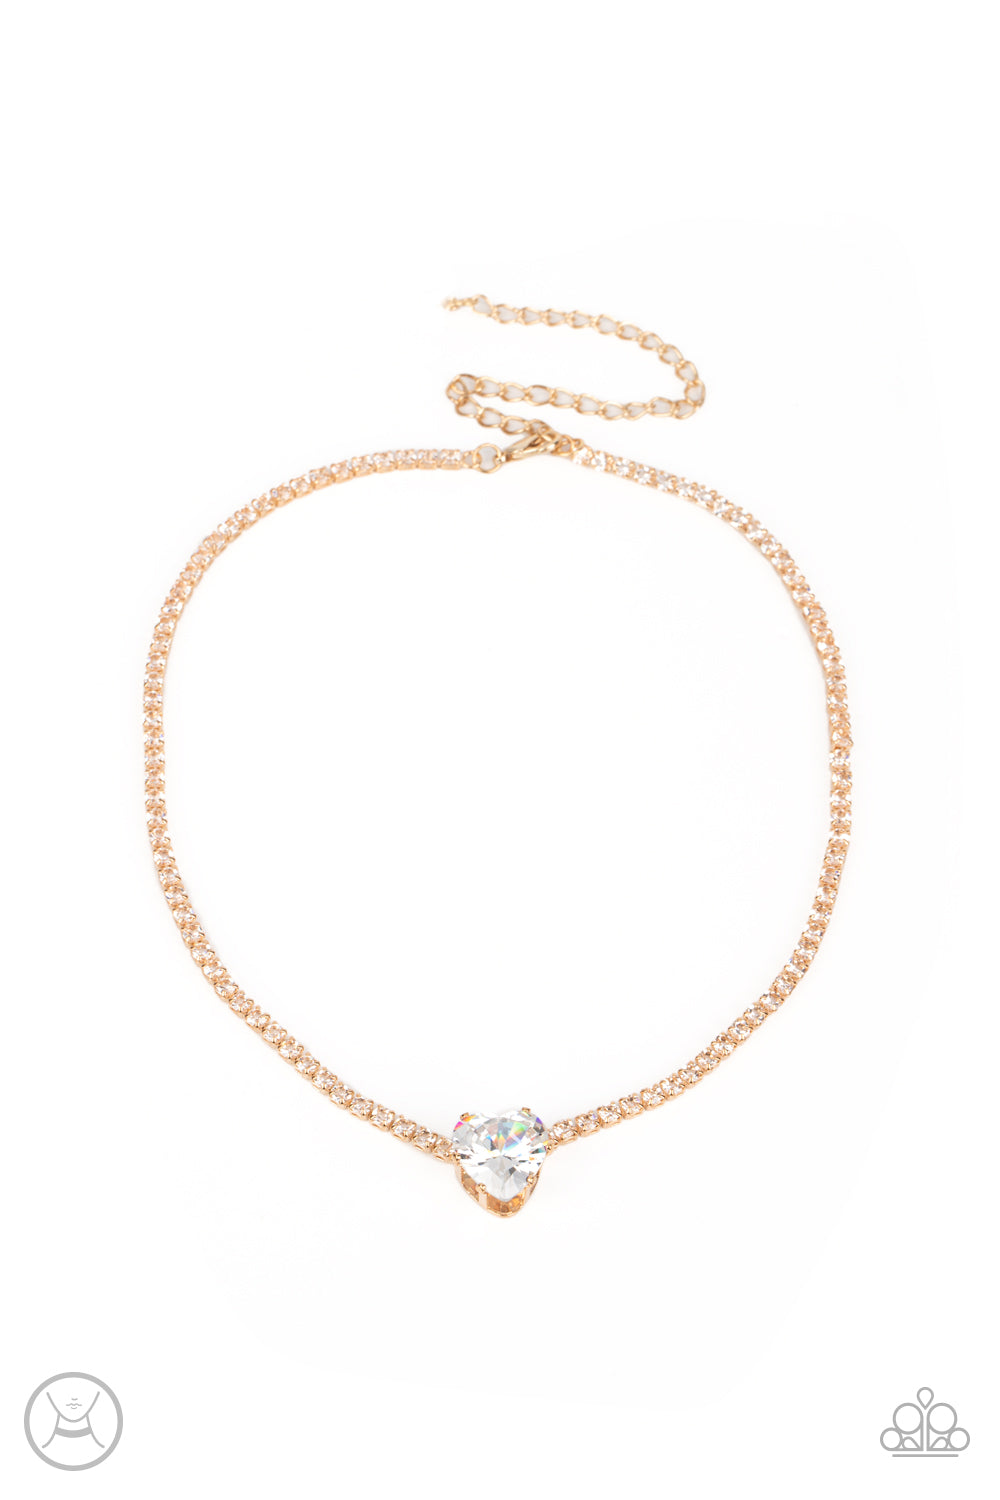 Flirty Fiancé Gold Necklace & Bracelet Set - Paparazzi Accessories 